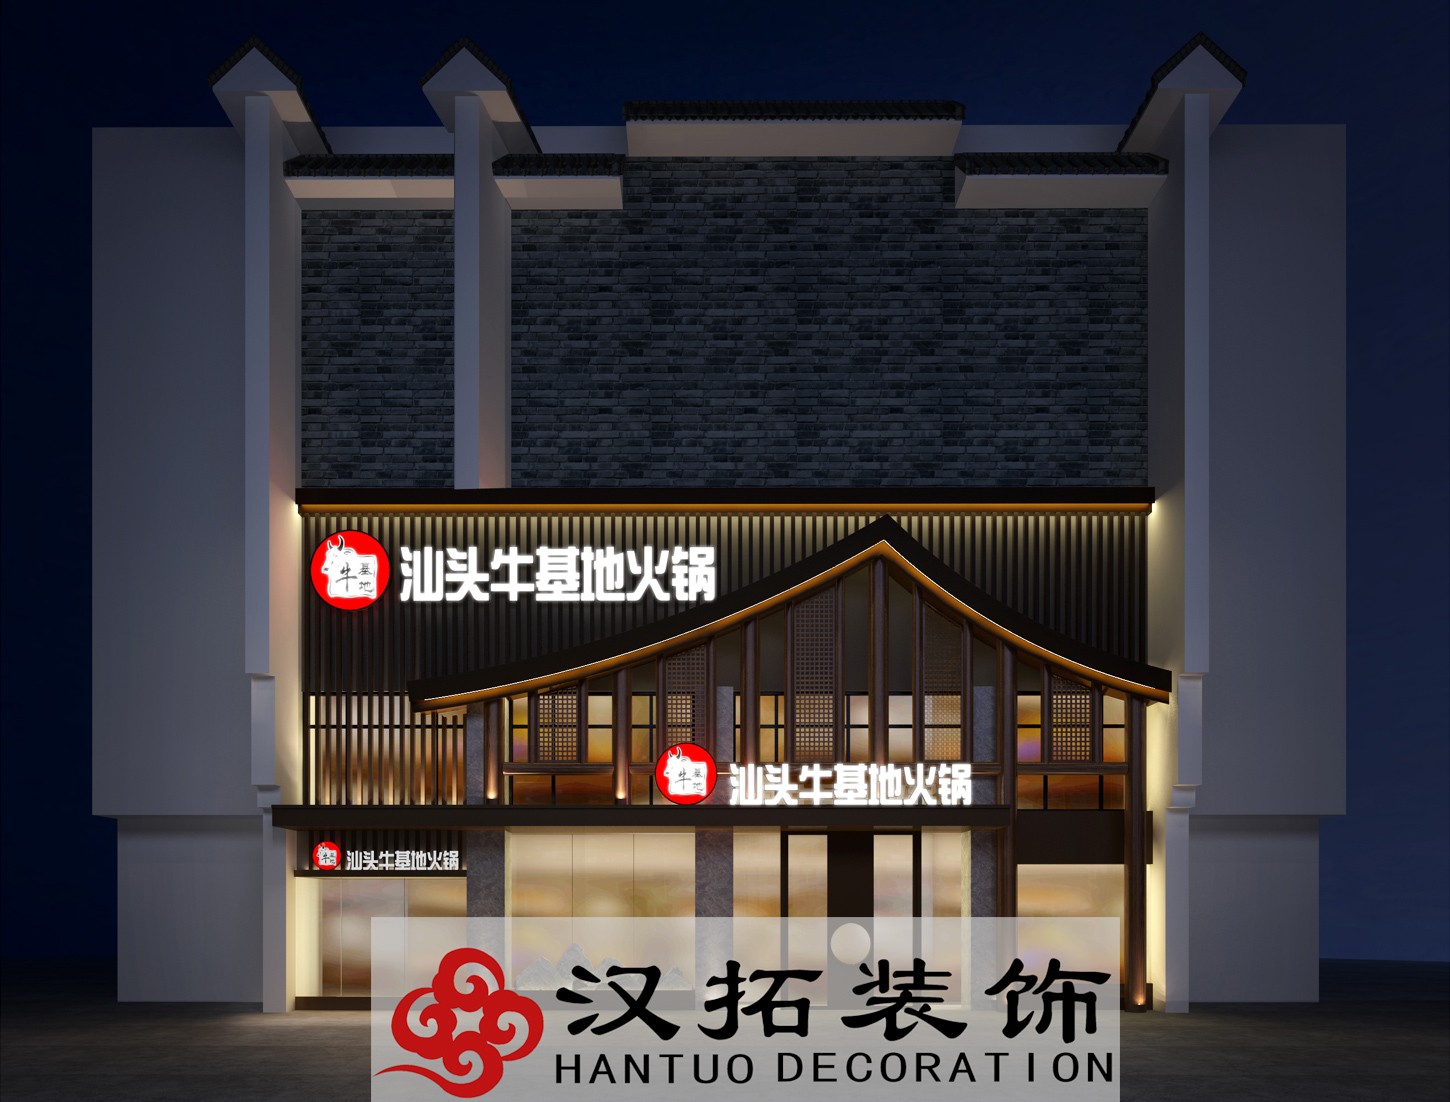 火锅店设计装修 项目面积:850平 所在城市:南京 项目风格:中式 项目